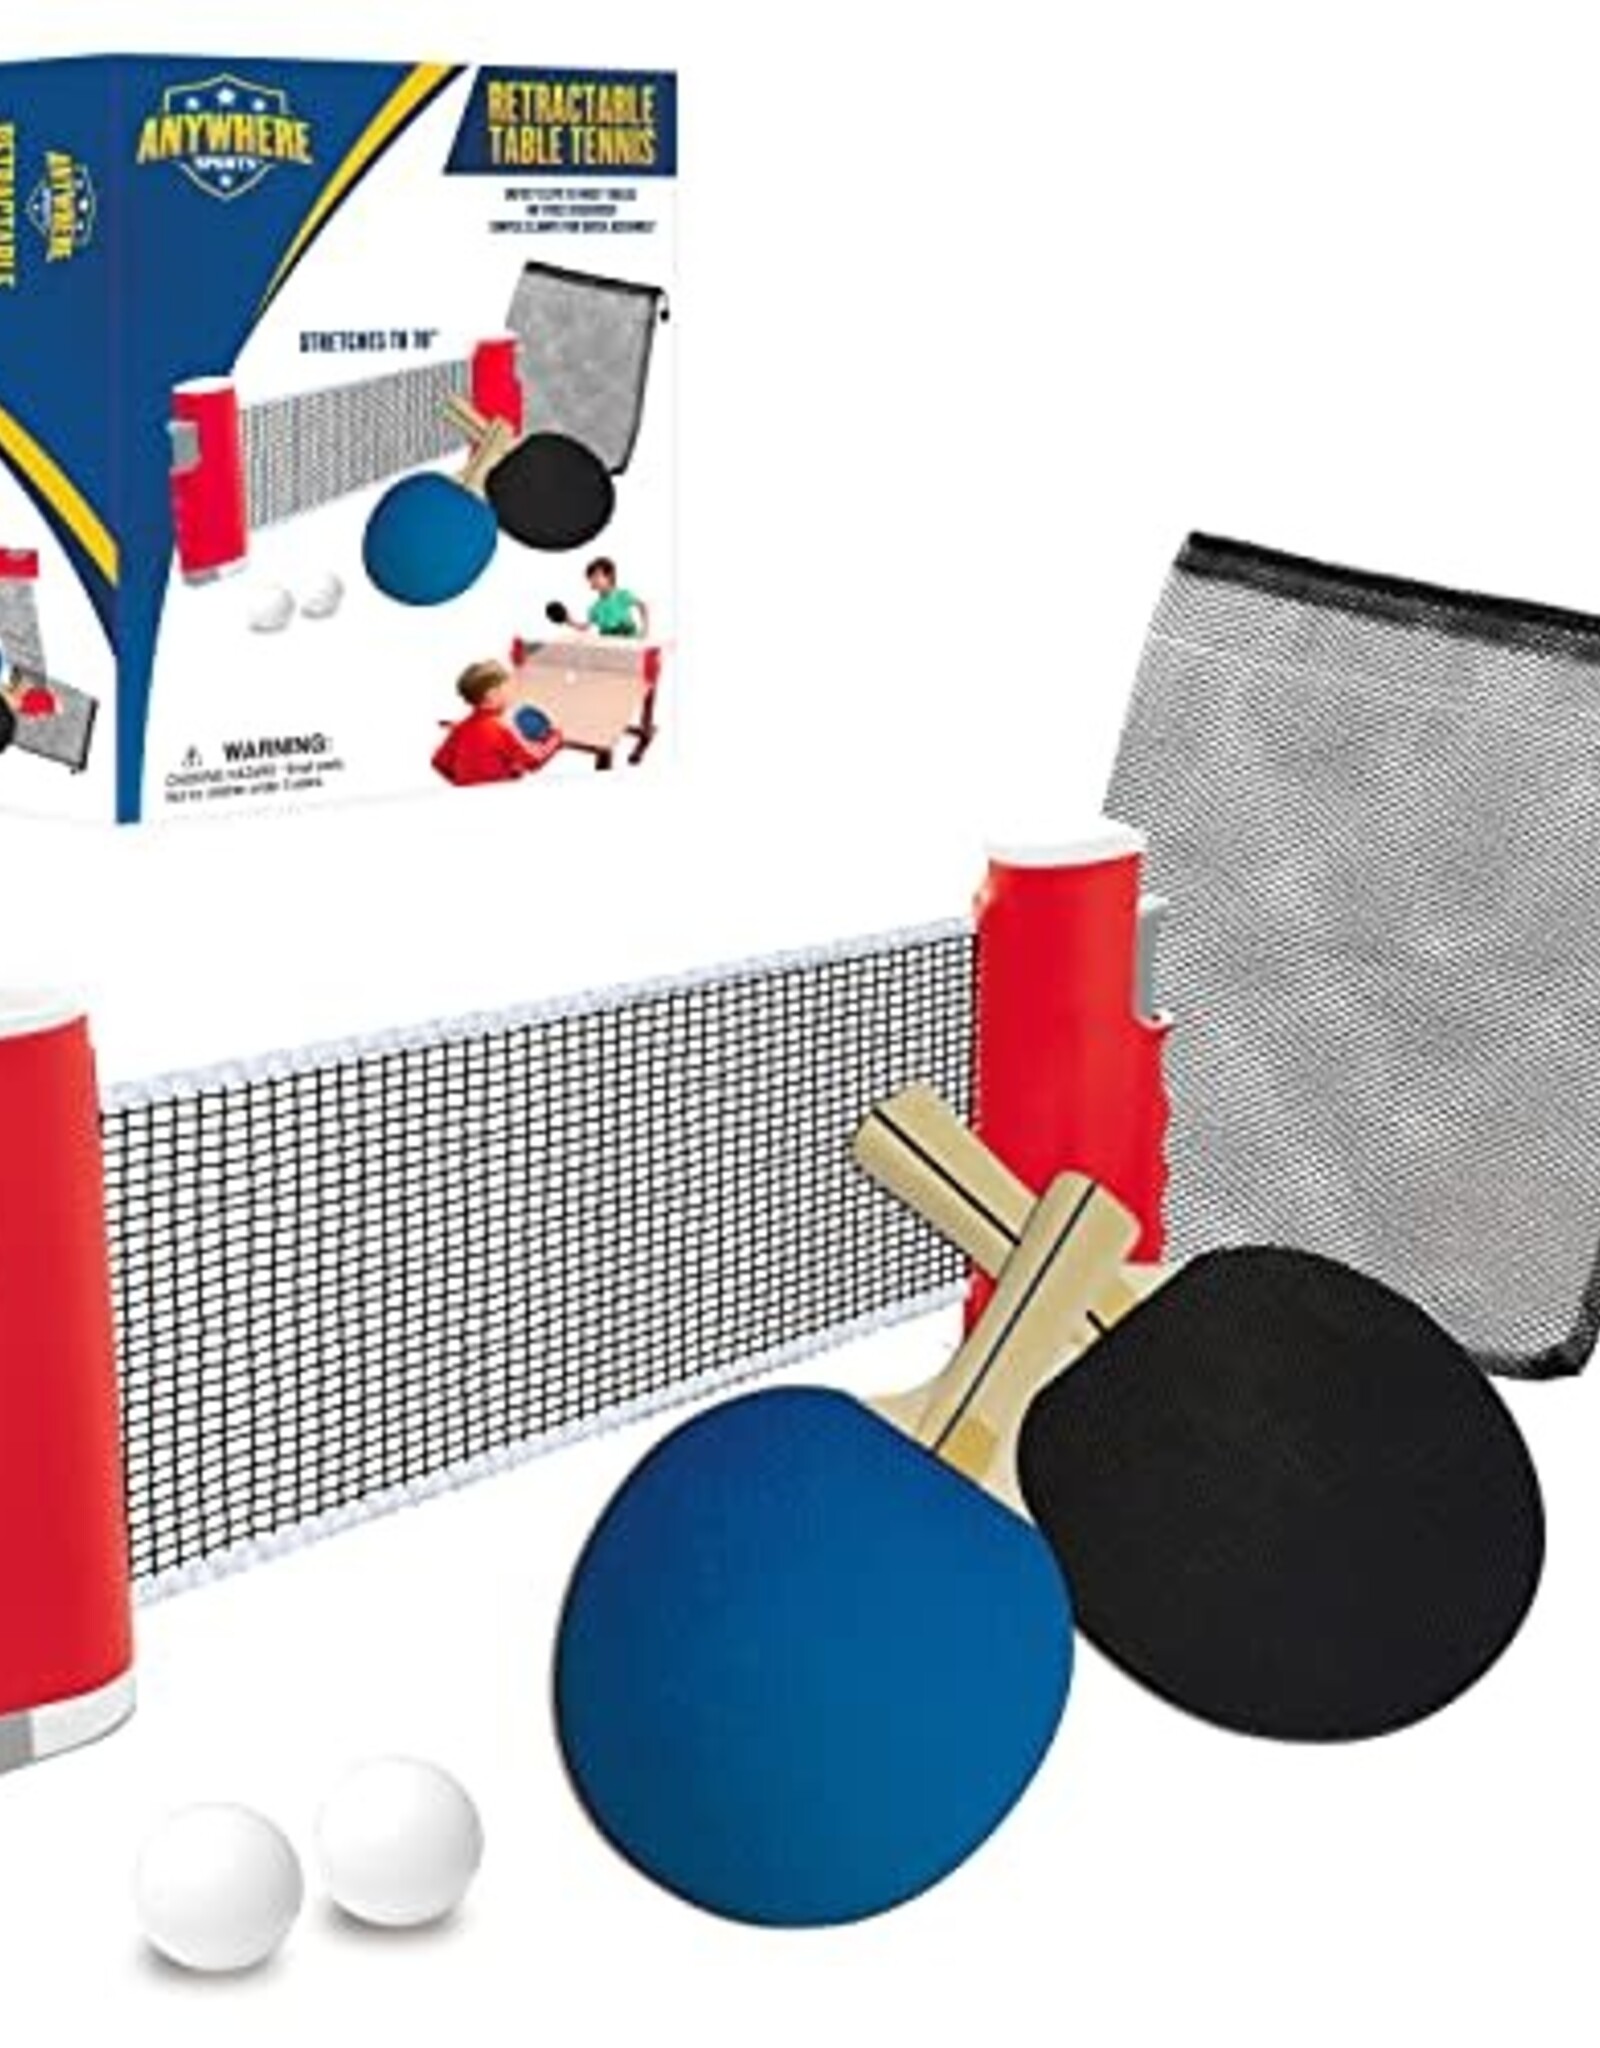 THIN AIR Retractable Table Tennis Set